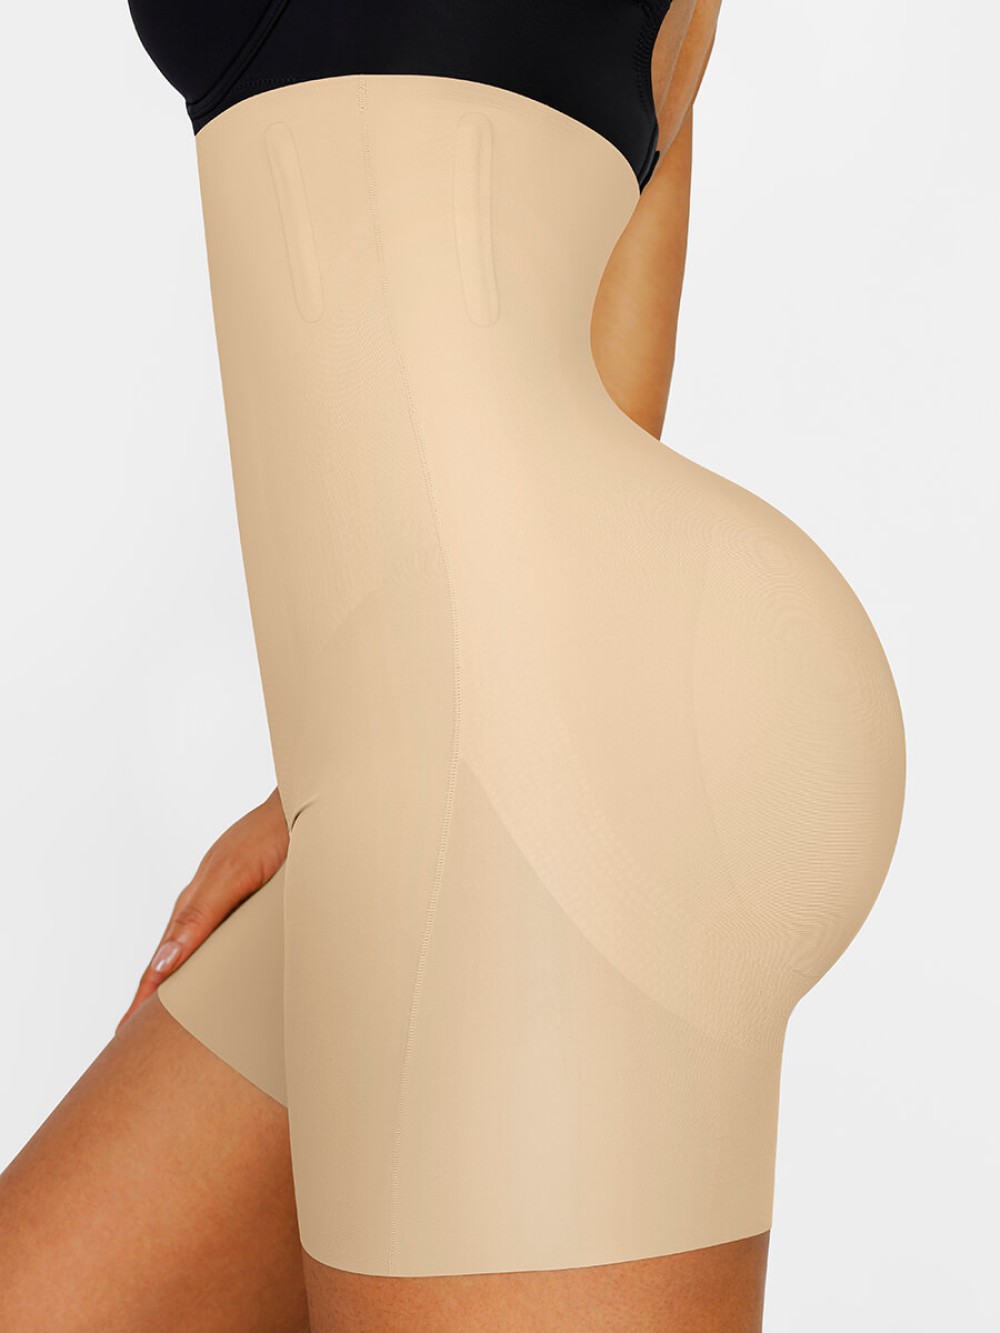 High Waist Butt Lifter Built-in removable buttock pads